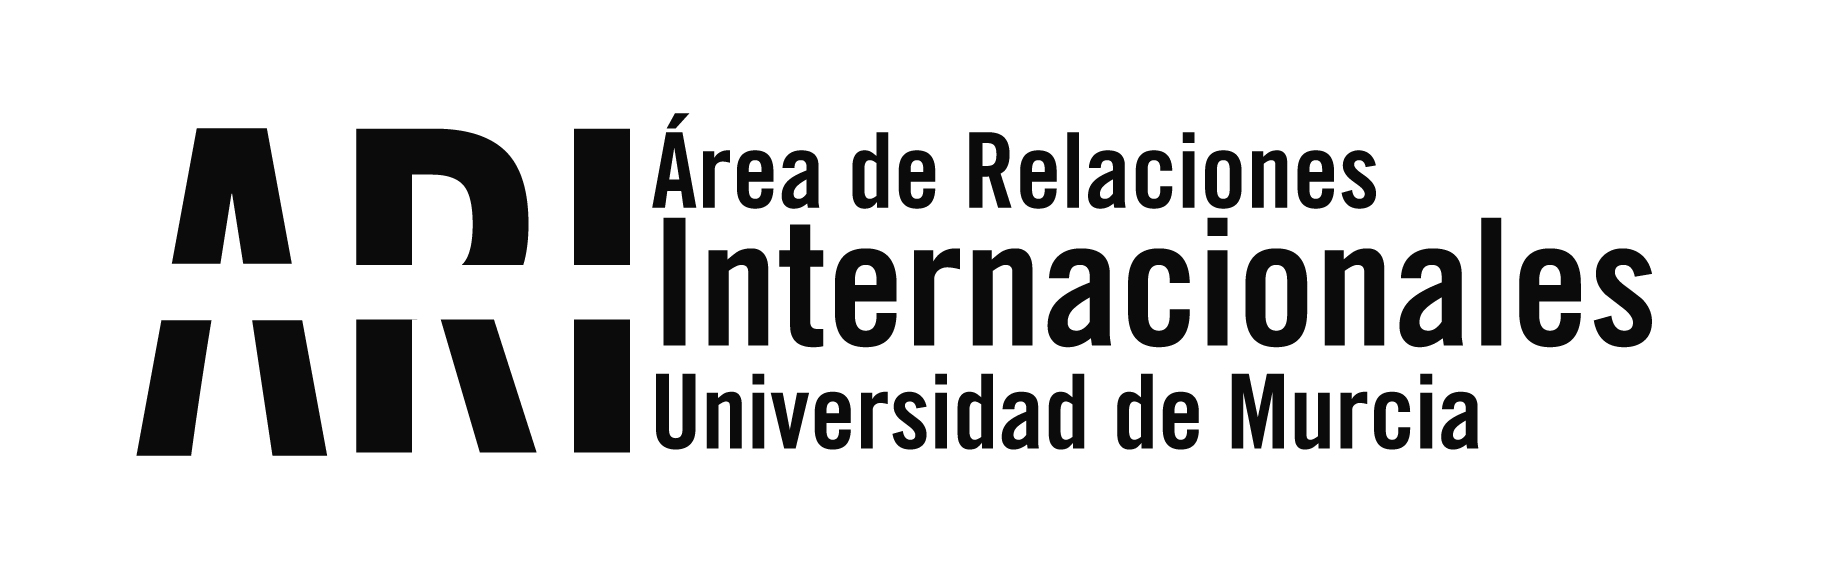 Convocatoria Becas MAEC-AECID Arte, Educación y Cultura 2015-2016 - Área de Relaciones Internacionales